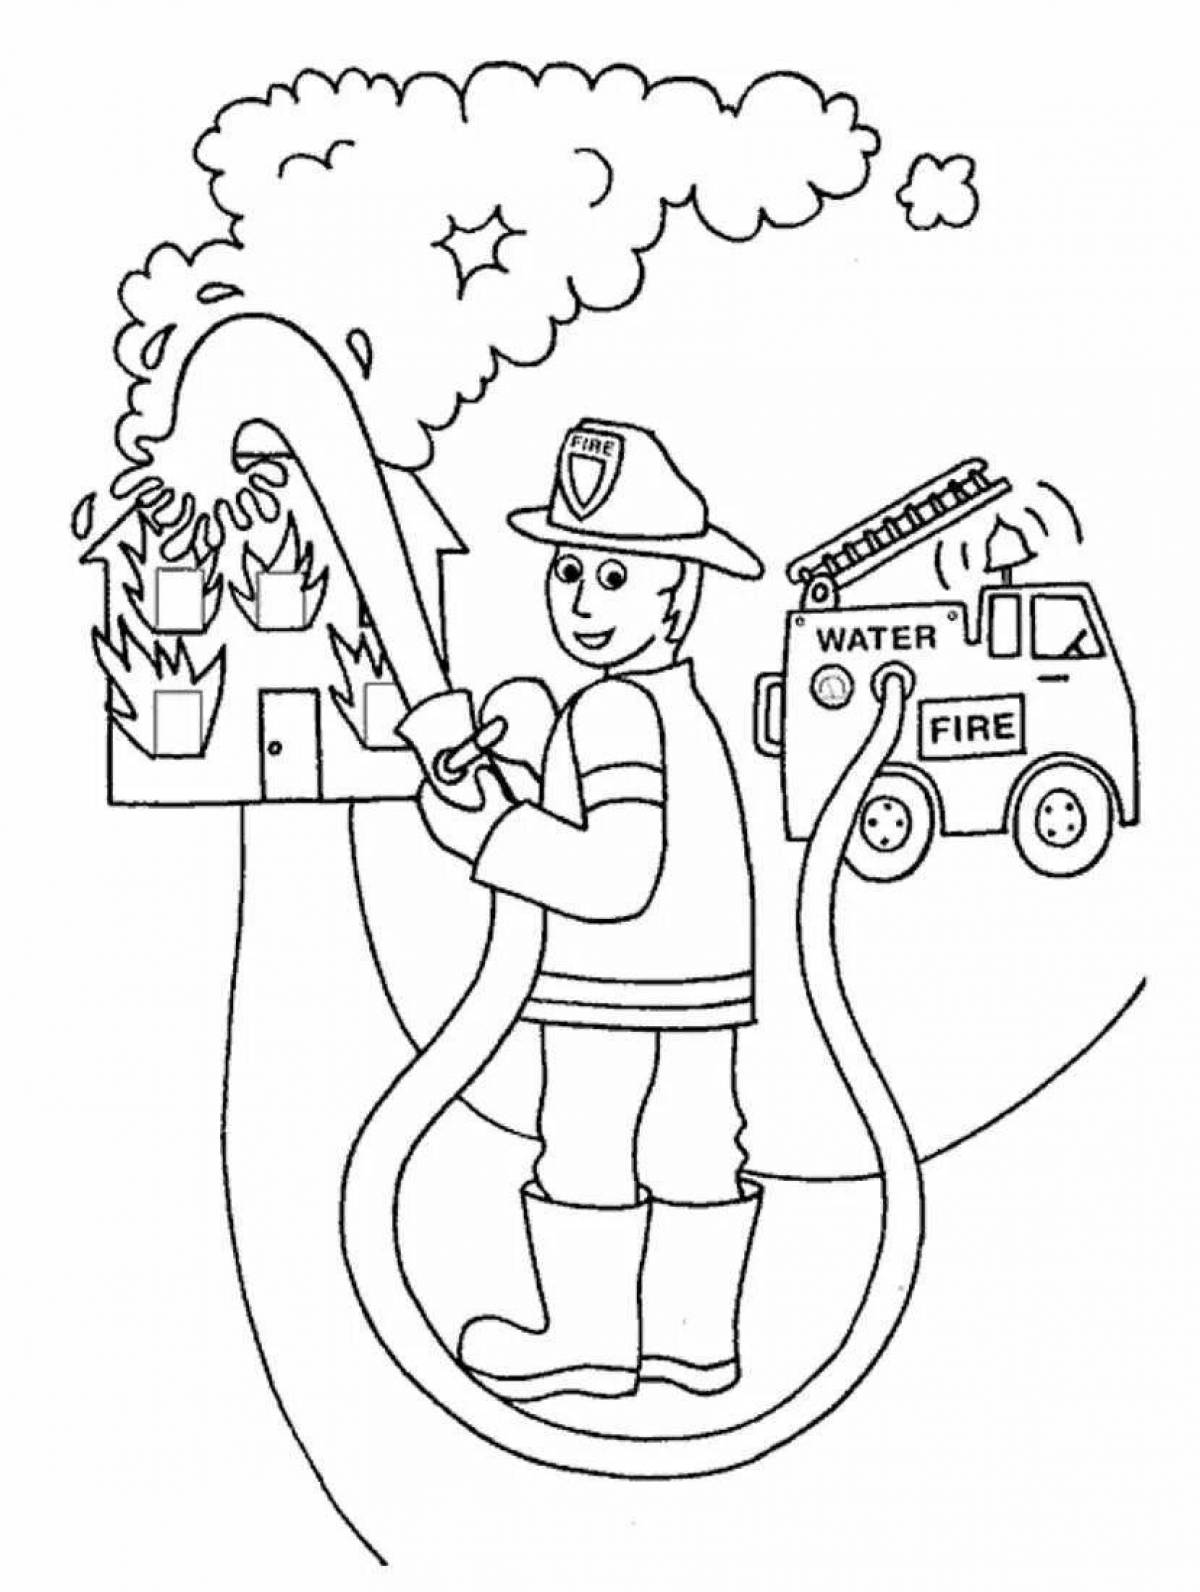 Kindergarten color sparkling fire safety page